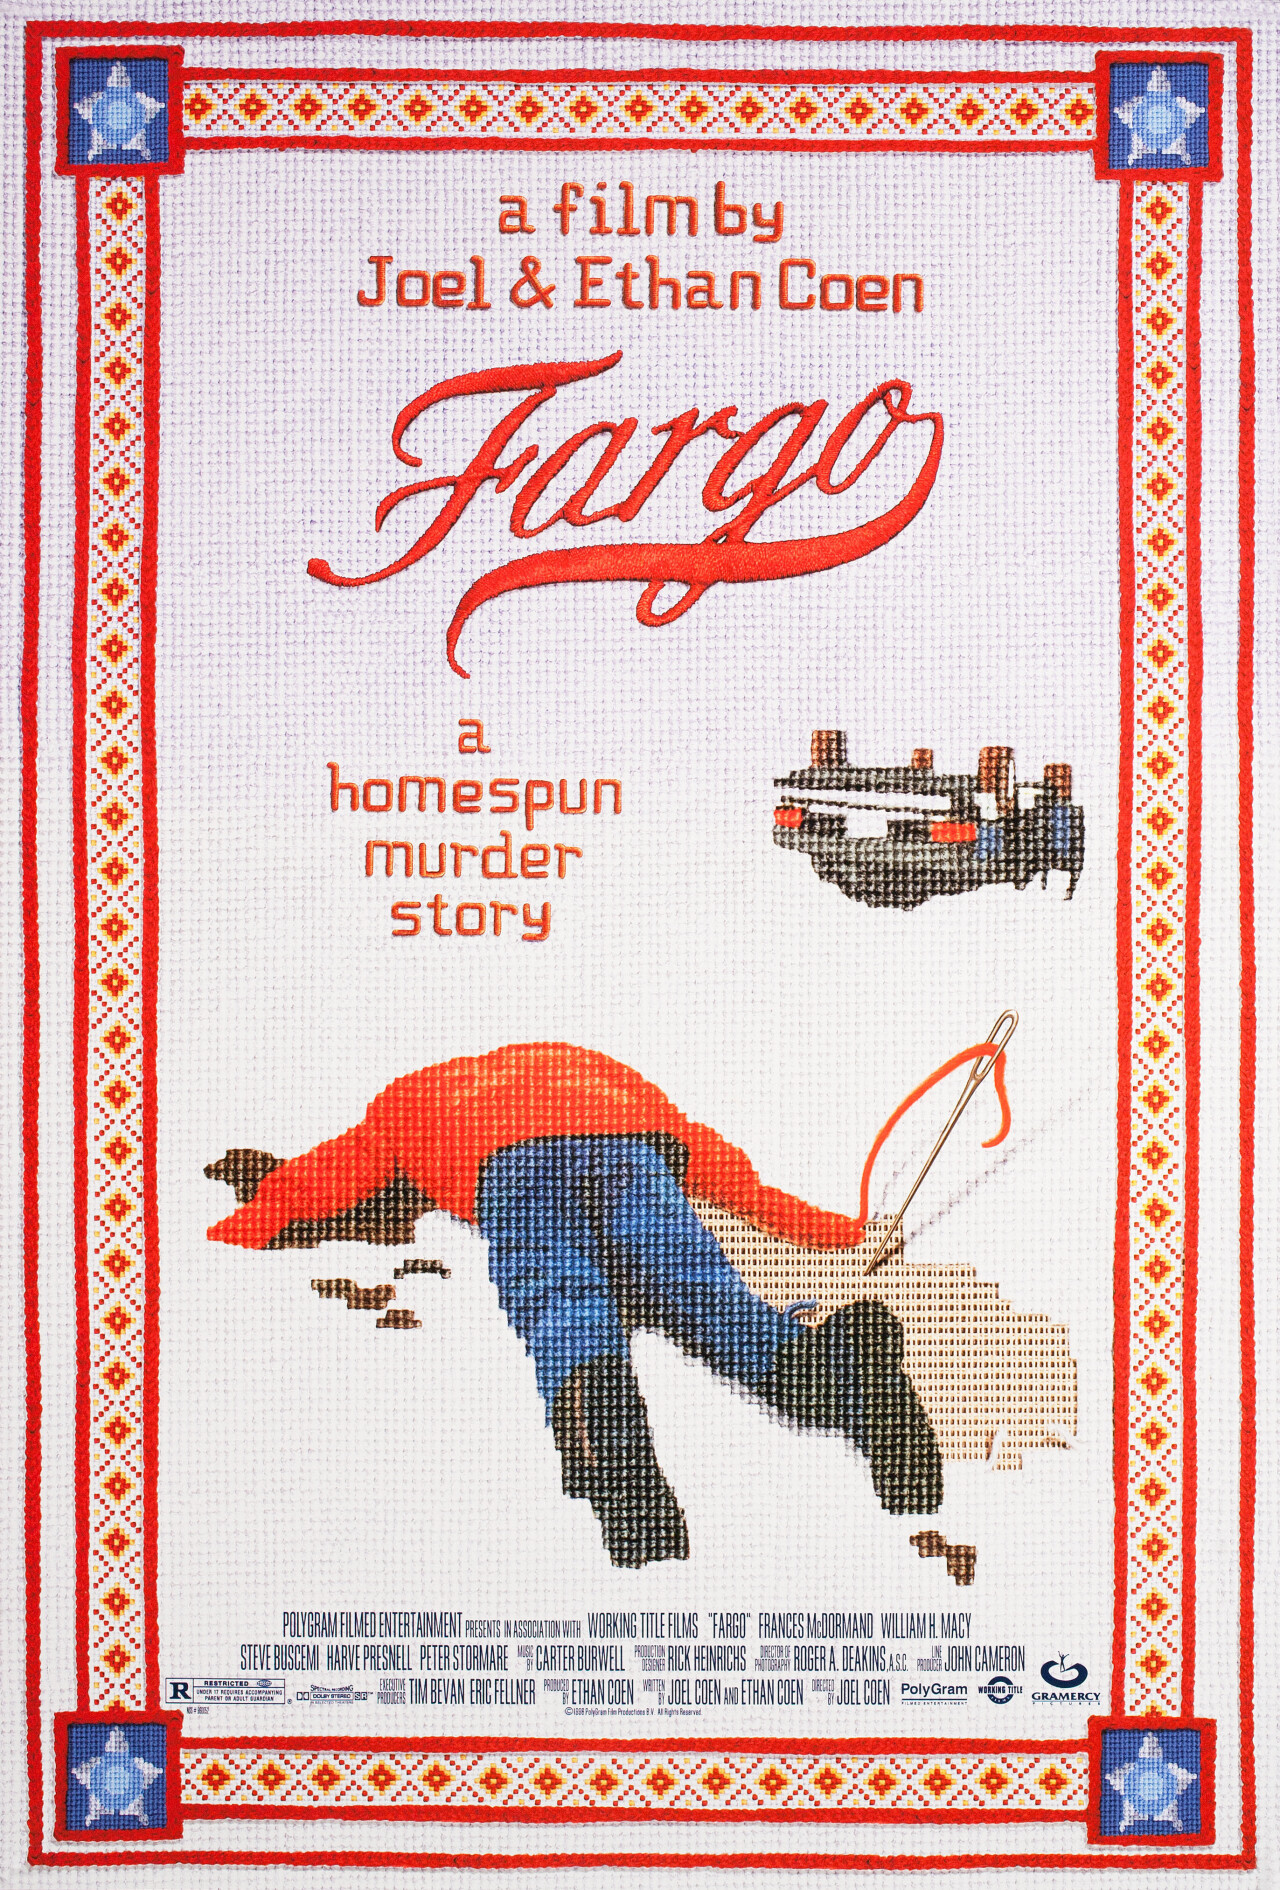 Фарго (Fargo, 1996), режиссёр Братья Коэн, американский постер к фильму (графический дизайн, 1996 год)